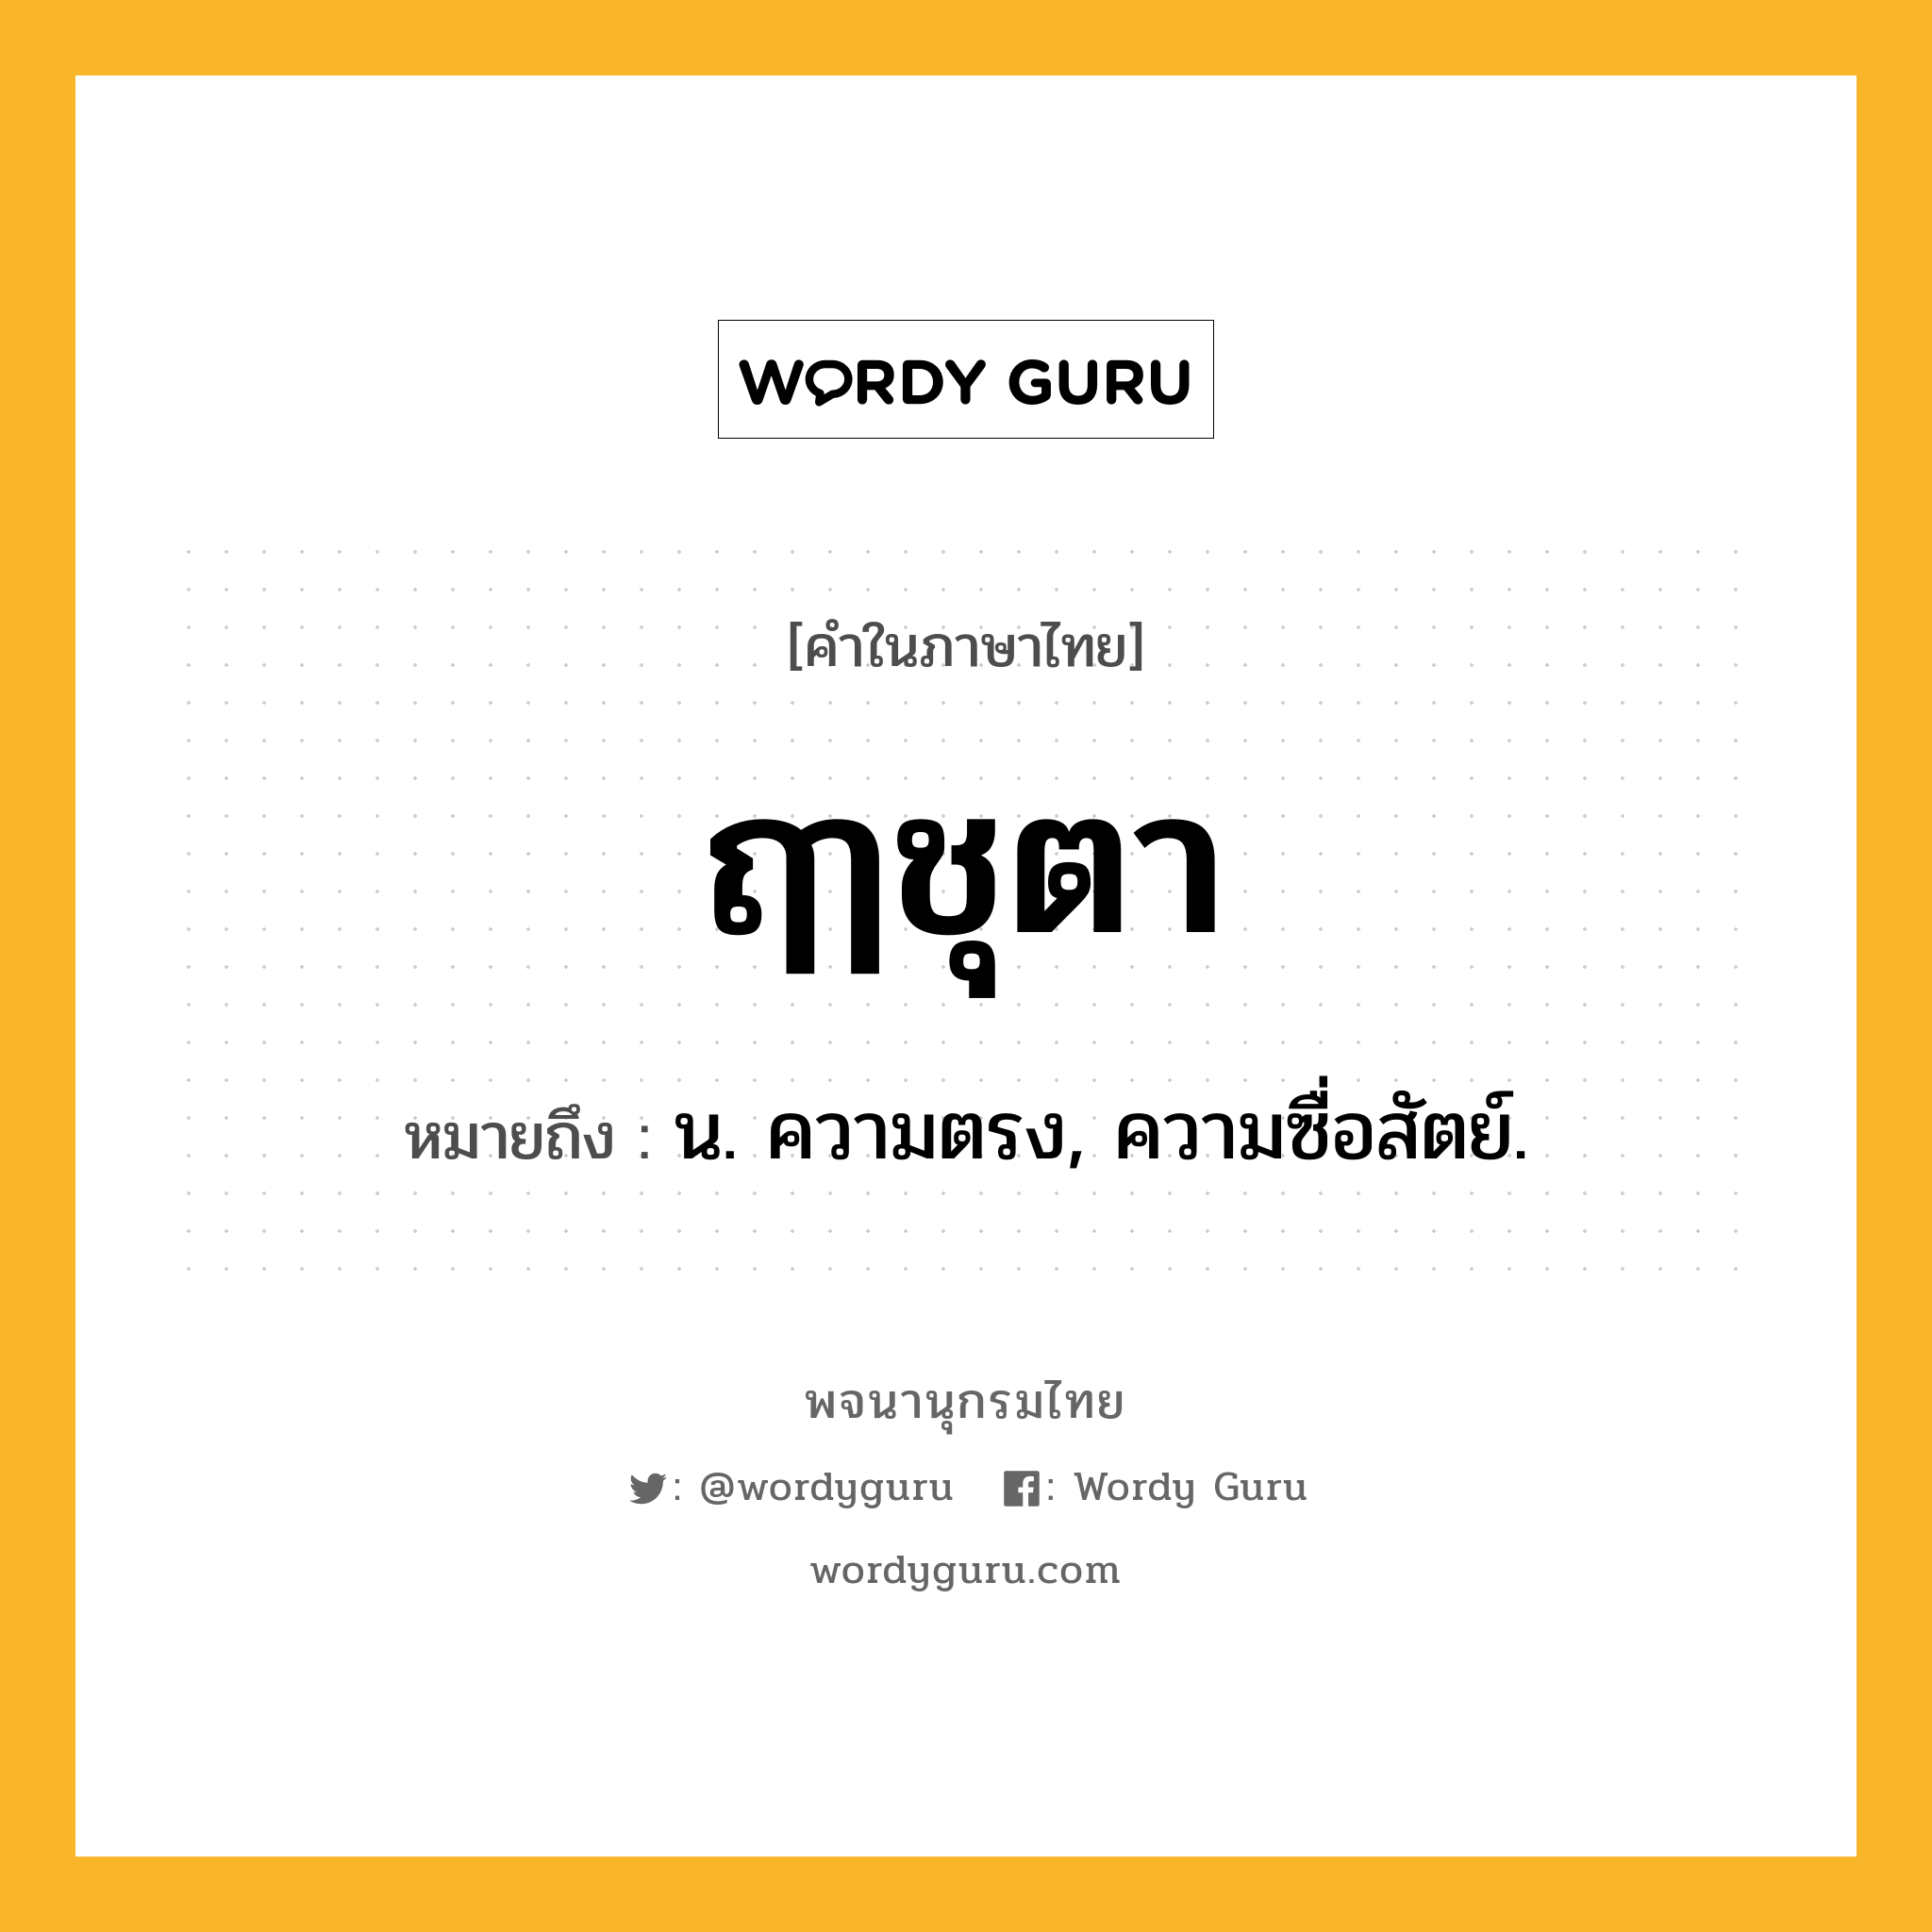 ฤๅชุตา หมายถึงอะไร?, คำในภาษาไทย ฤๅชุตา หมายถึง น. ความตรง, ความซื่อสัตย์.